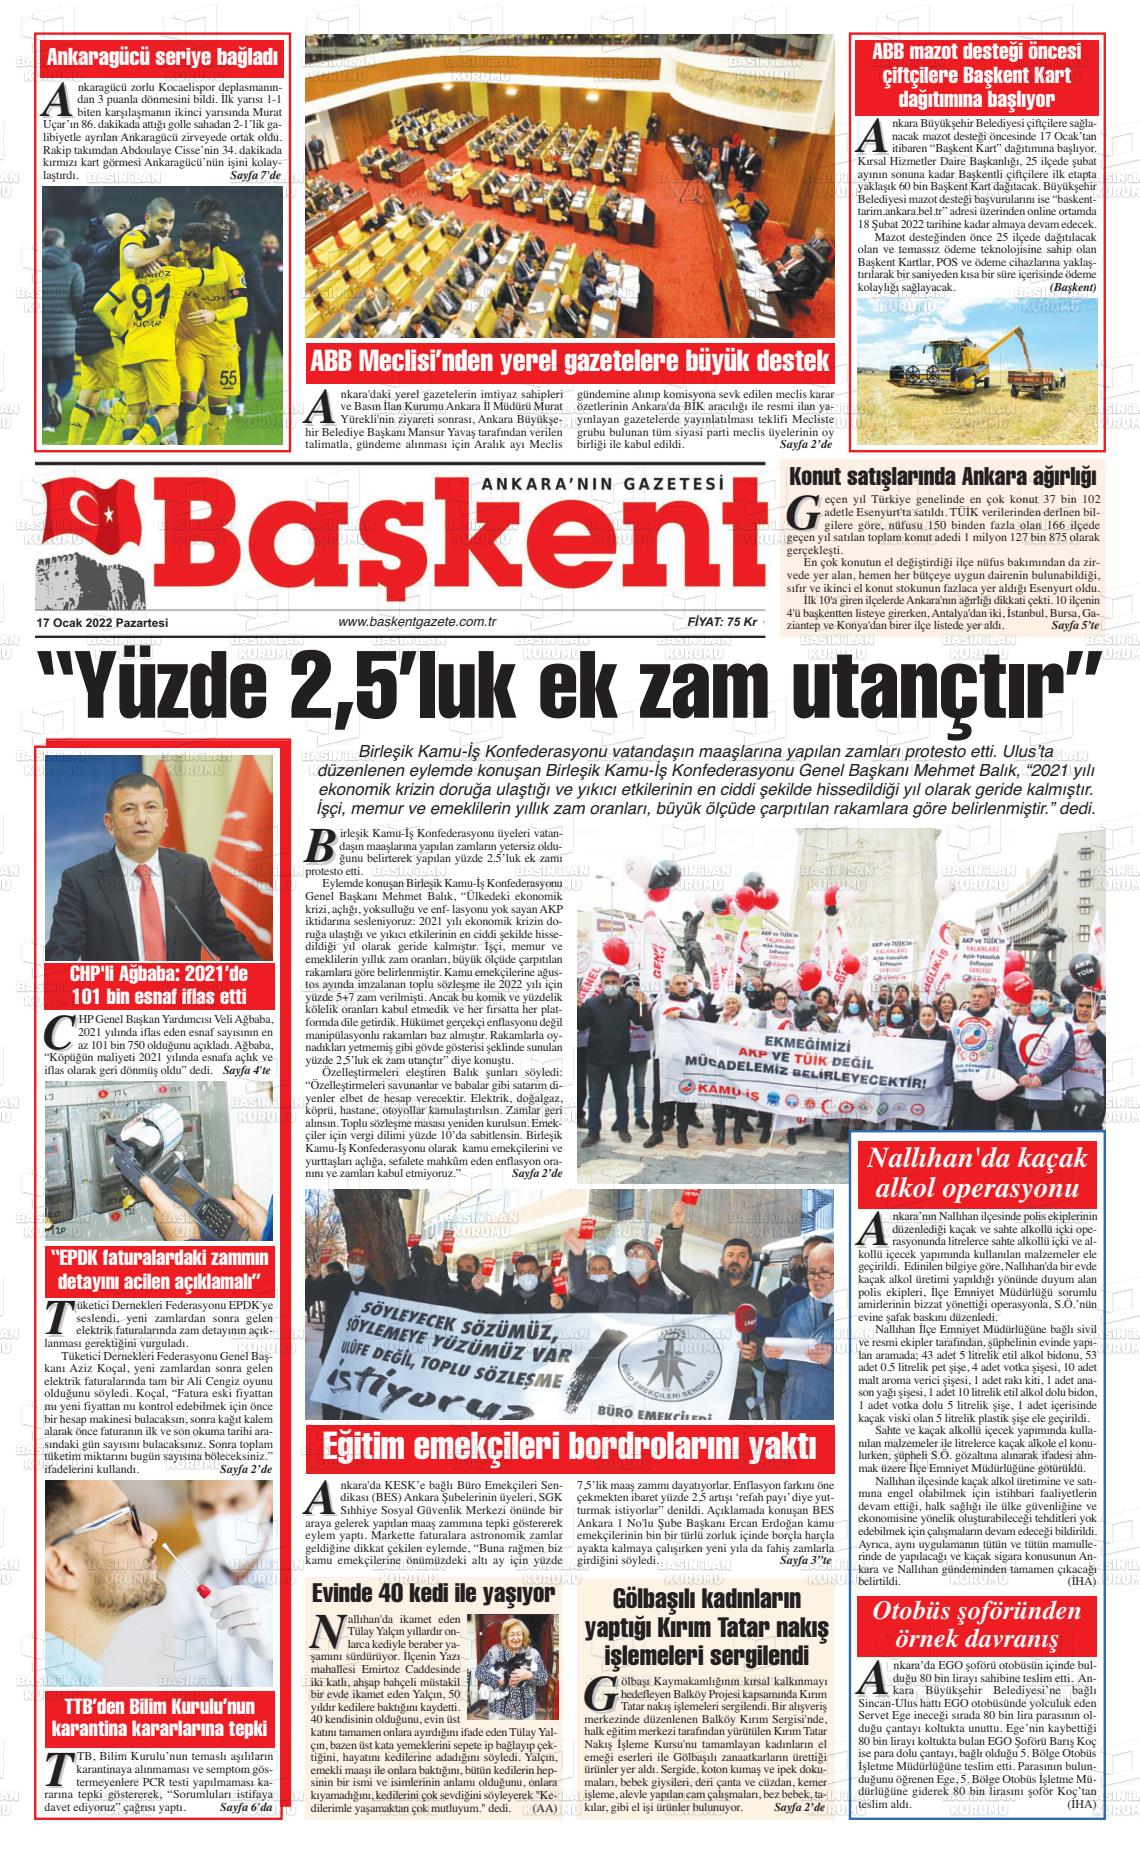 17 Ocak 2022 Ankara Başkent Gazete Manşeti